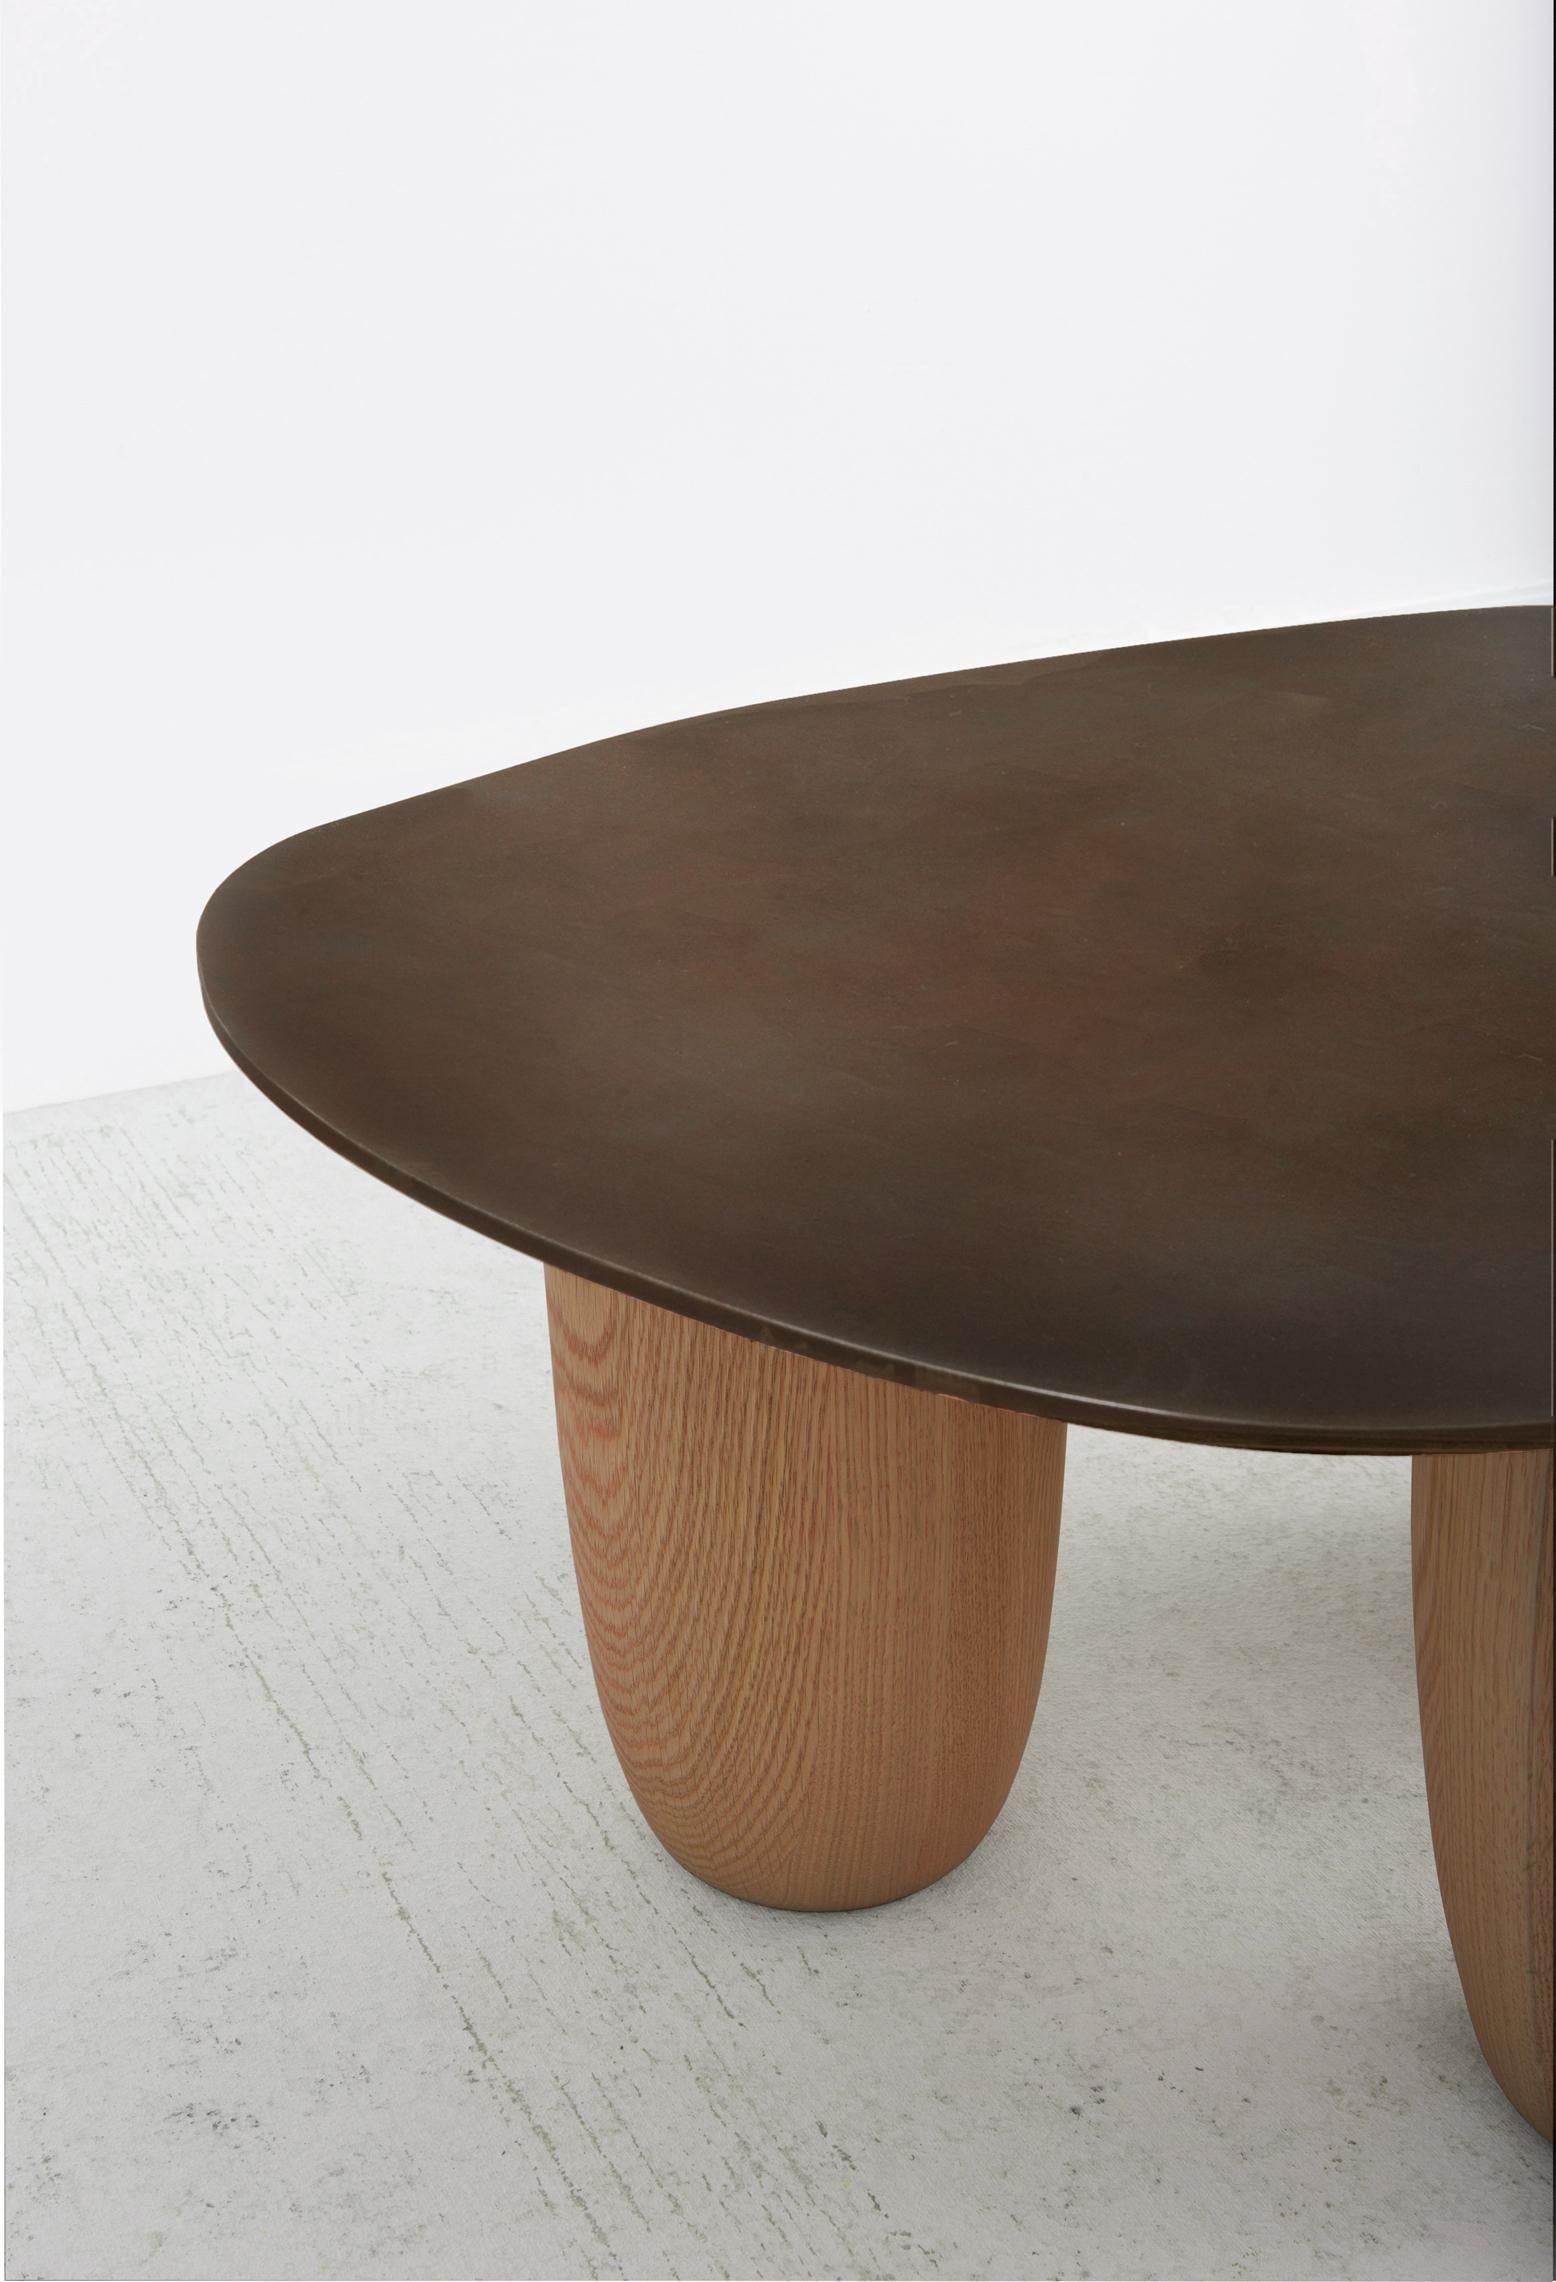 Nos tables basses contemporaines Steele en acier et en chêne massif sont désormais proposées dans différentes finitions. Les tables Sumo originales ont été présentées à l'occasion de Design Miami 2020. Ce design a été influencé par l'esthétique